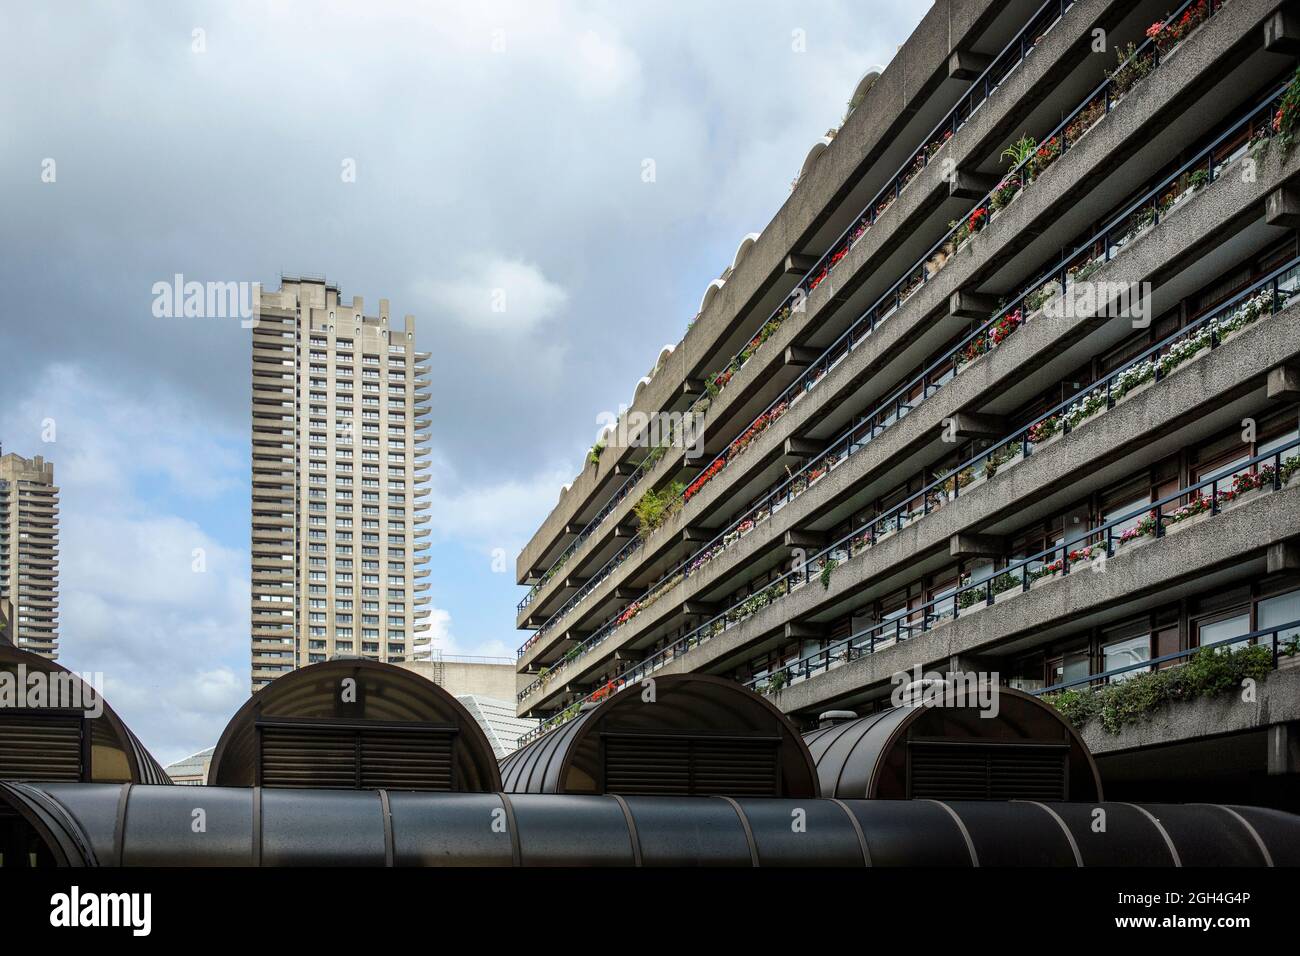 Vue sur l'architecture brutaliste du Barbican Center à Londres EC2 Angleterre Royaume-Uni Banque D'Images